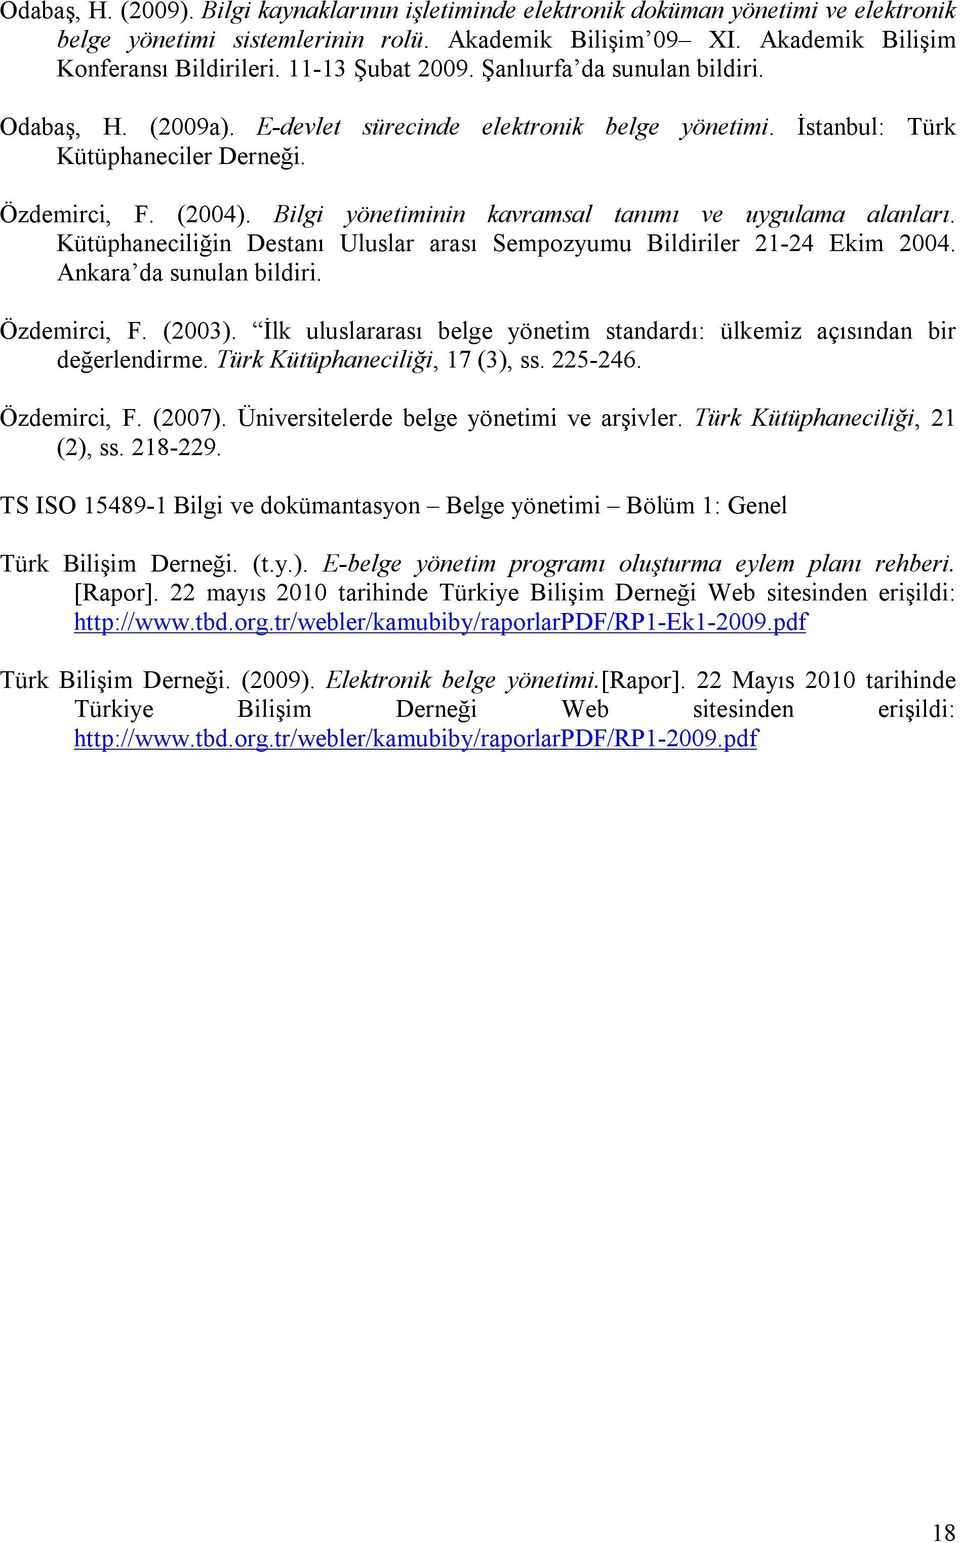 Bilgi yönetiminin kavramsal tanımı ve uygulama alanları. Kütüphaneciliğin Destanı Uluslar arası Sempozyumu Bildiriler 21-24 Ekim 2004. Ankara da sunulan bildiri. Özdemirci, F. (2003).